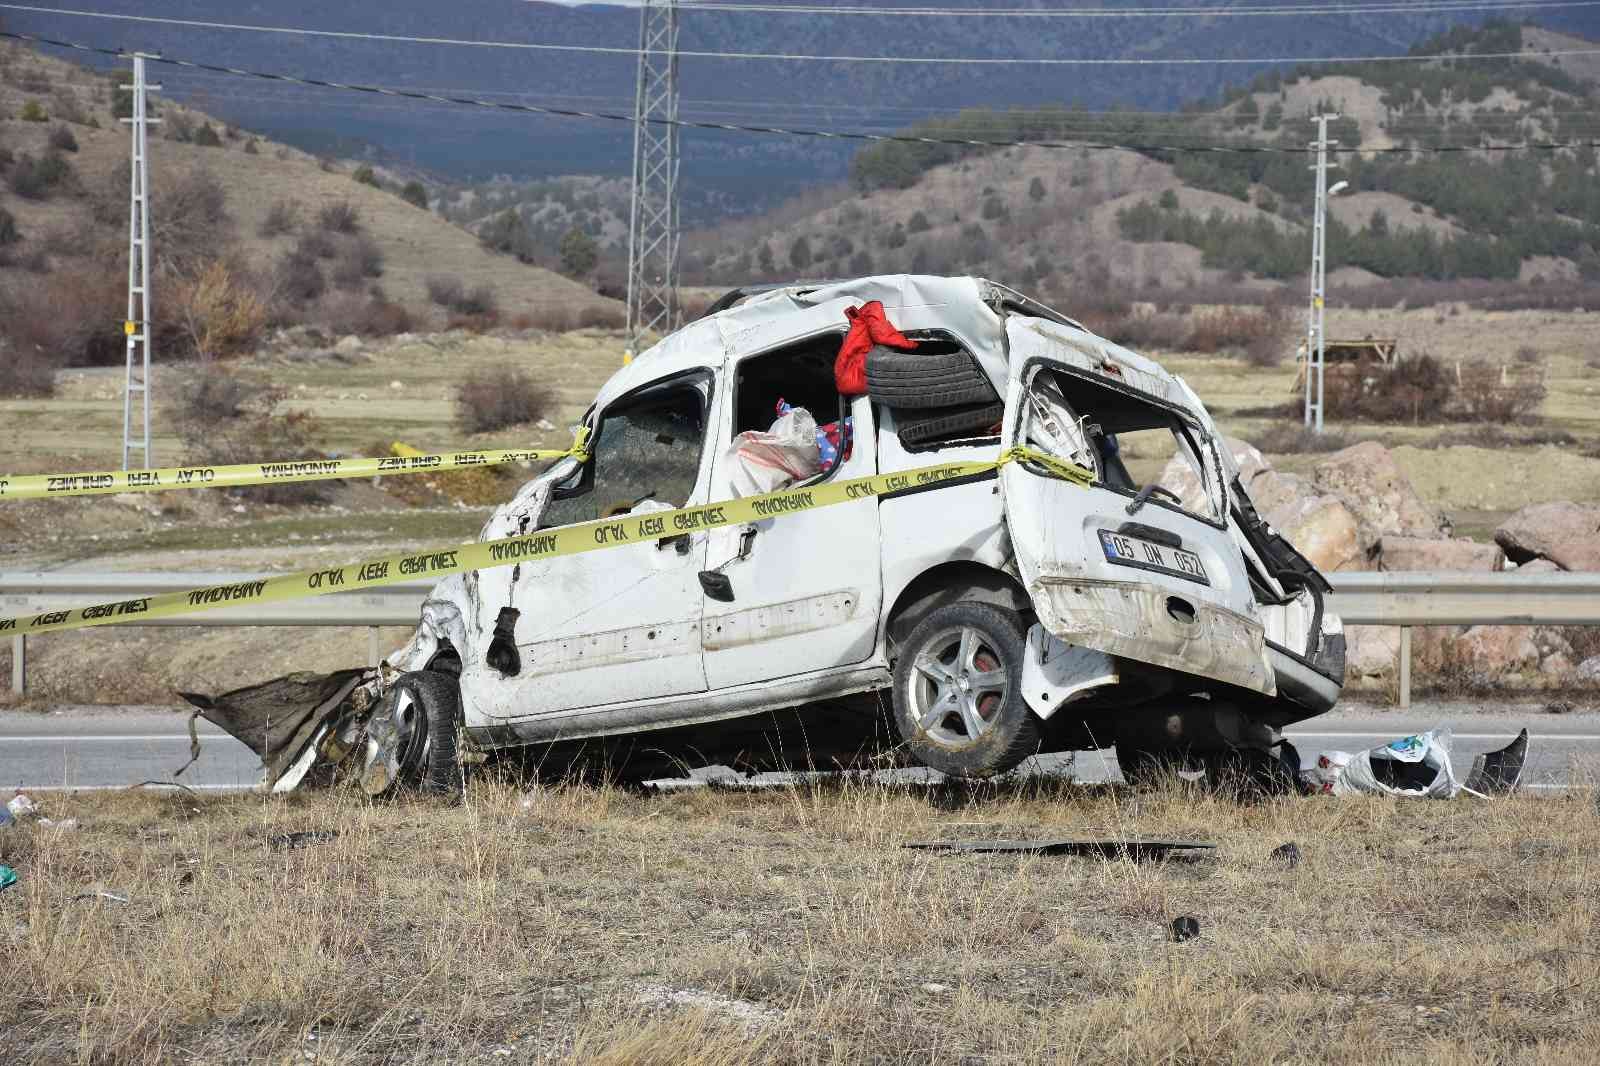 Tosya’da 2021 yılında 6 kişi trafik kazalarında öldü #kastamonu